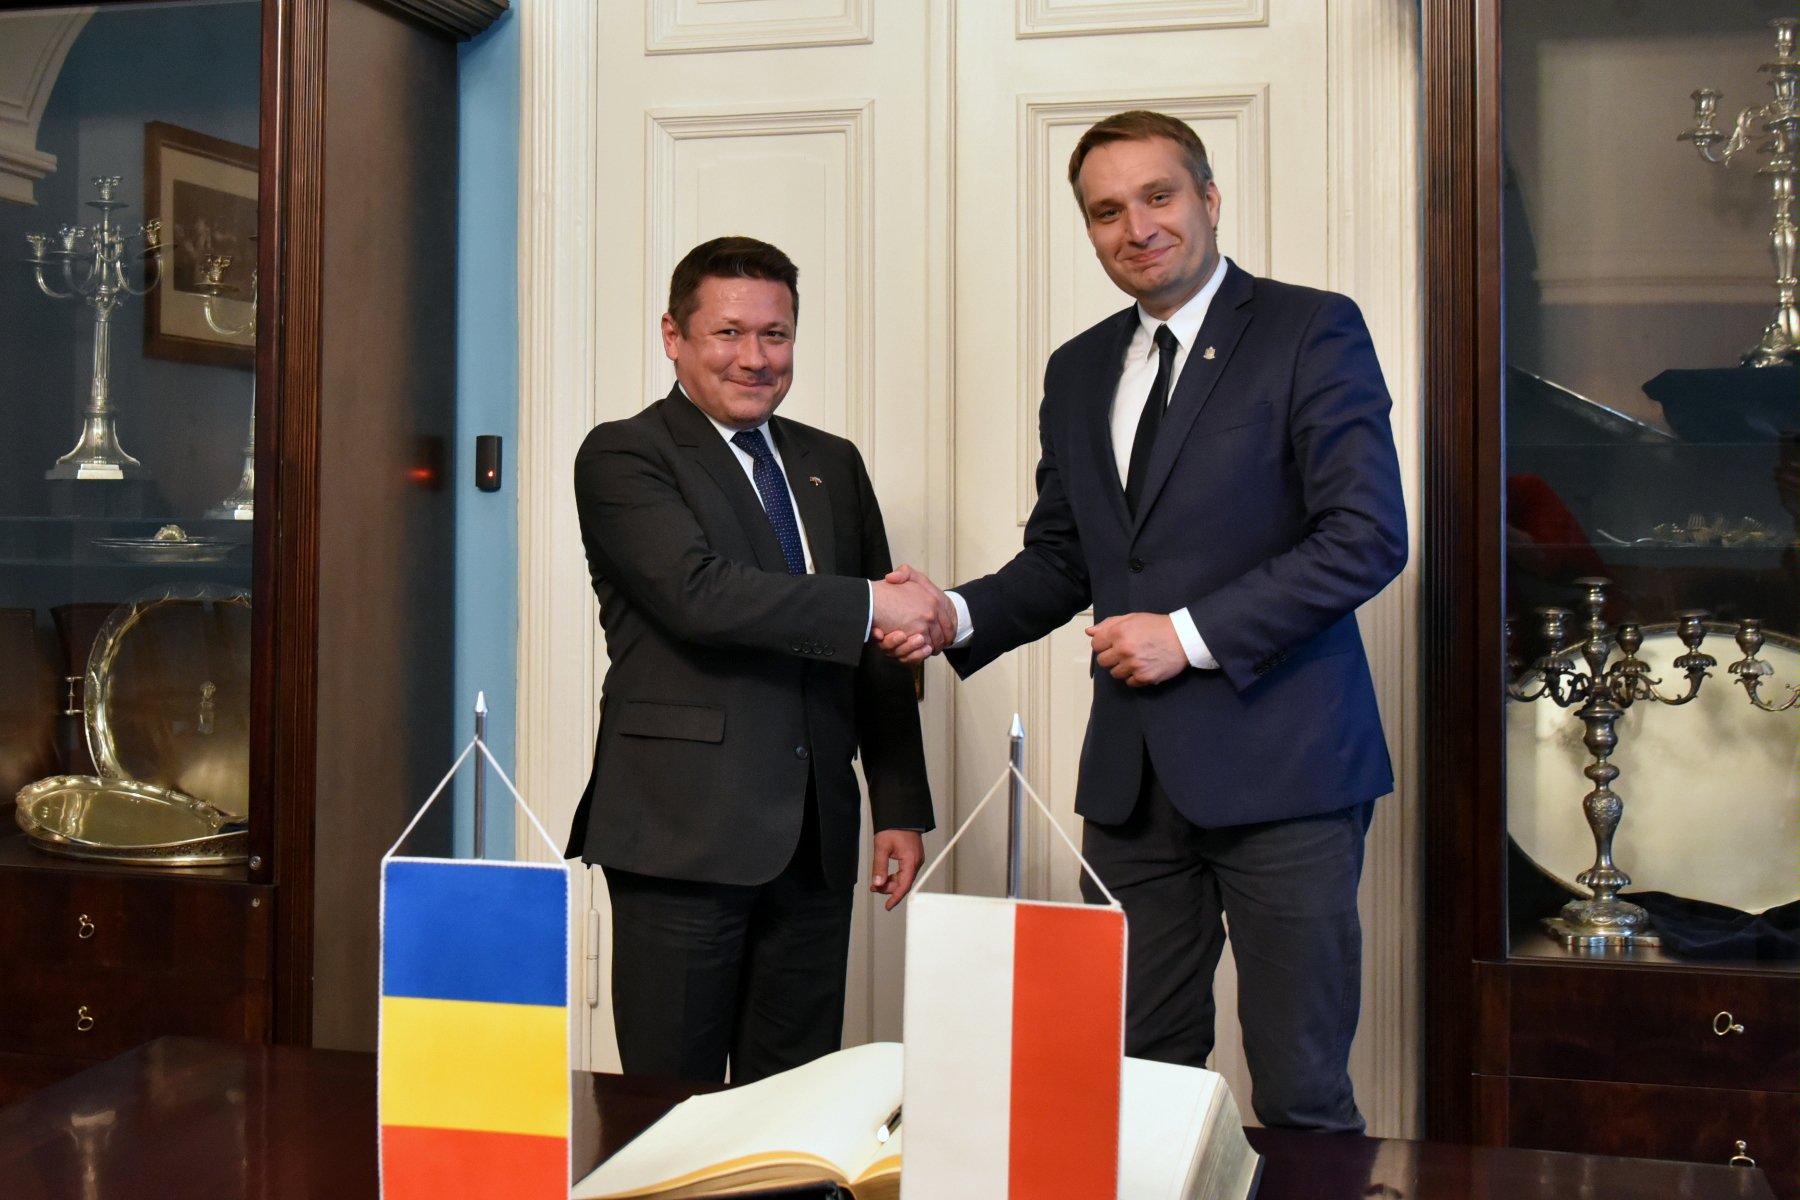 Na zdjęciu zastępca prezydenta Poznania i ambasador podają sobie dłonie - grafika artykułu